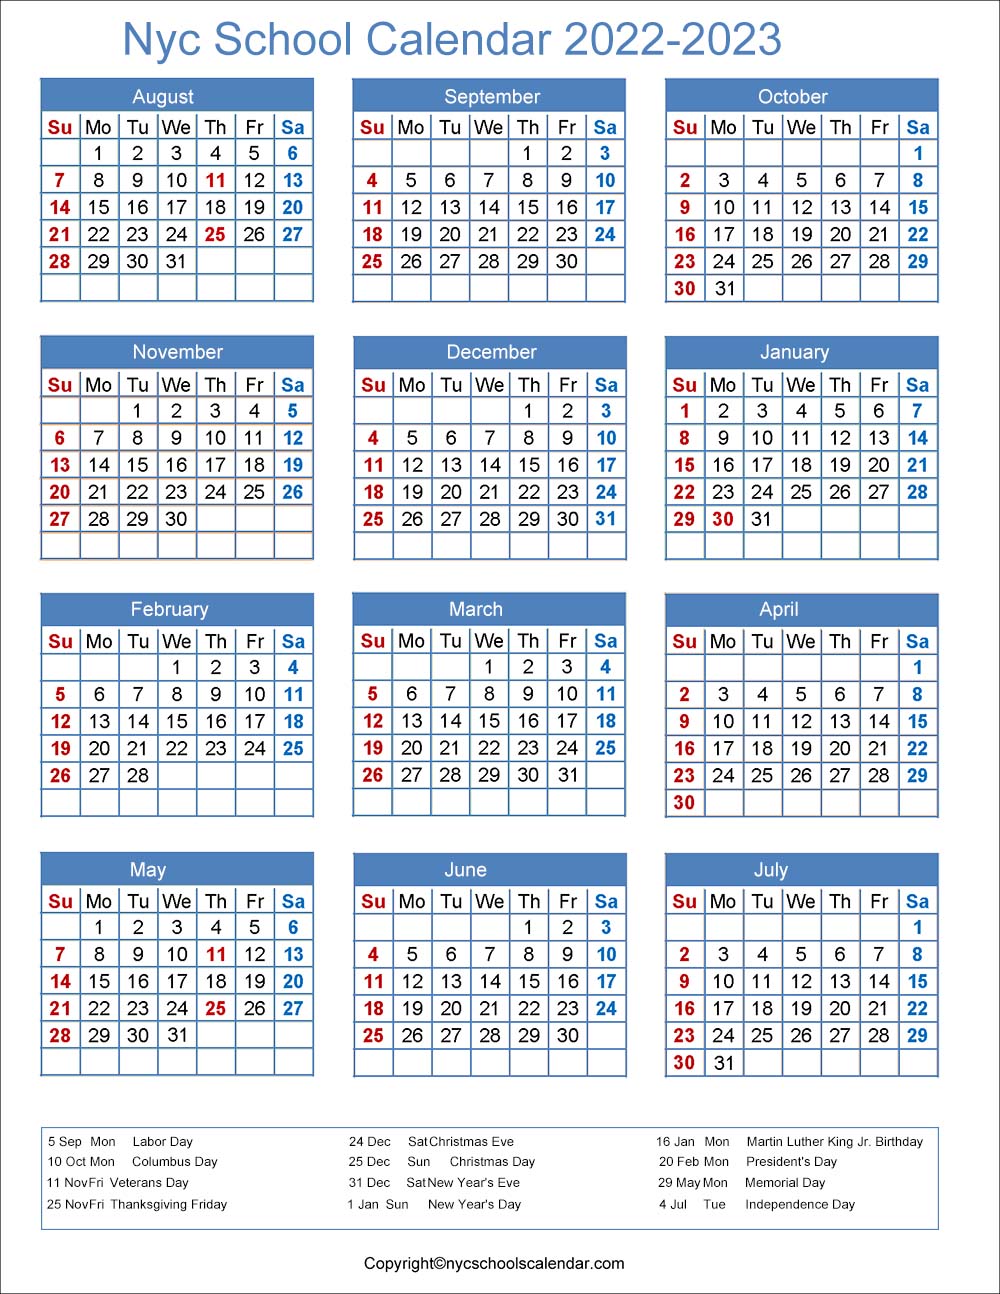 Plattsburgh Academic Calendar 2022 ❤️Nyc School Holidays Calendar 2022-2023 ✓